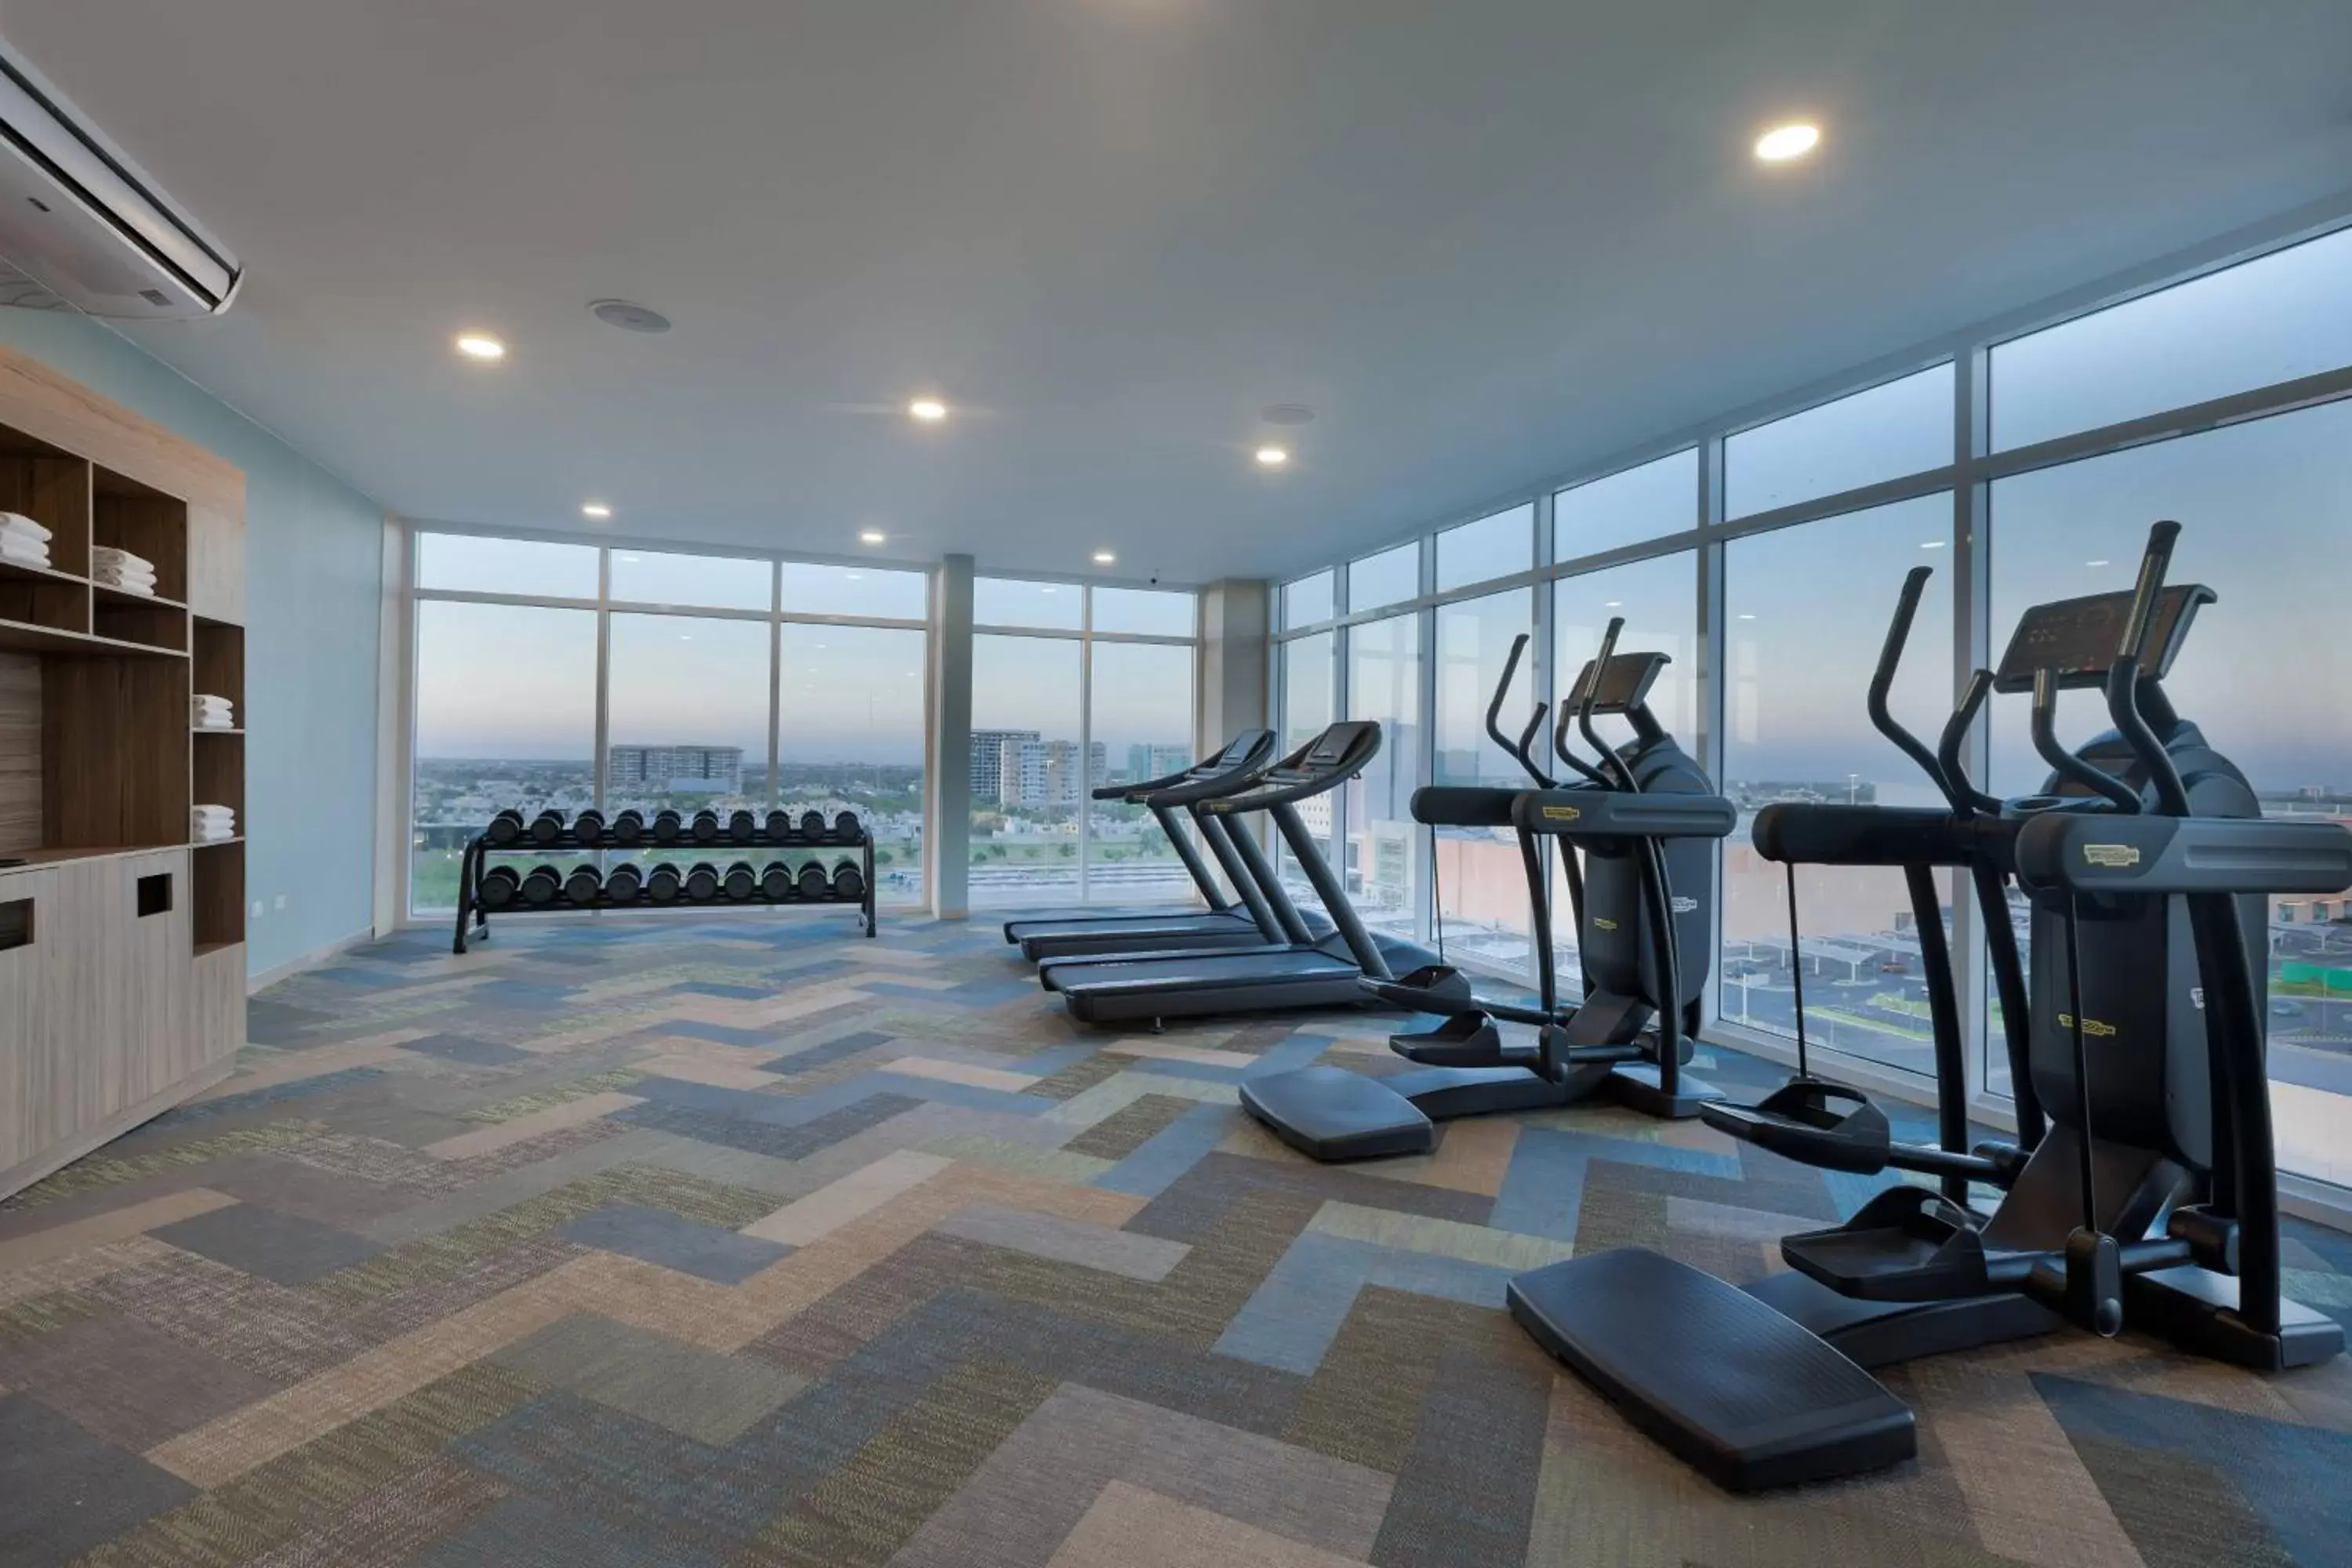 Fitness centre/facilities, Fitness Center/Facilities in Residence Inn by Marriott Merida